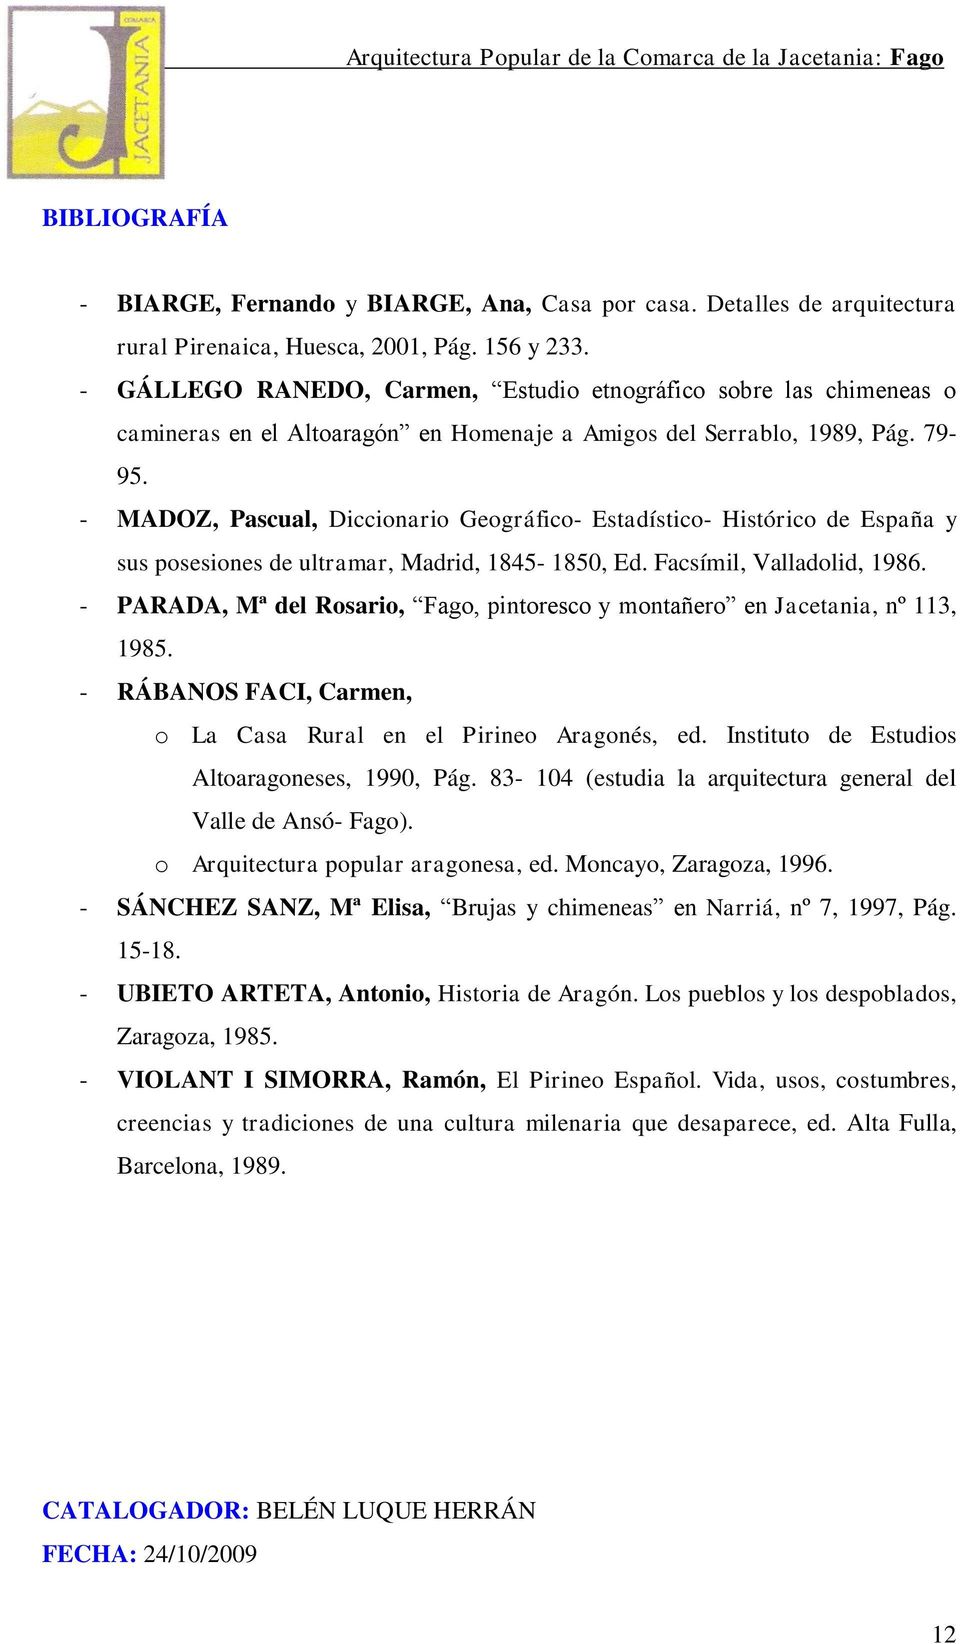 - MADOZ, Pascual, Diccionario Geográfico- Estadístico- Histórico de España y sus posesiones de ultramar, Madrid, 1845-1850, Ed. Facsímil, Valladolid, 1986.